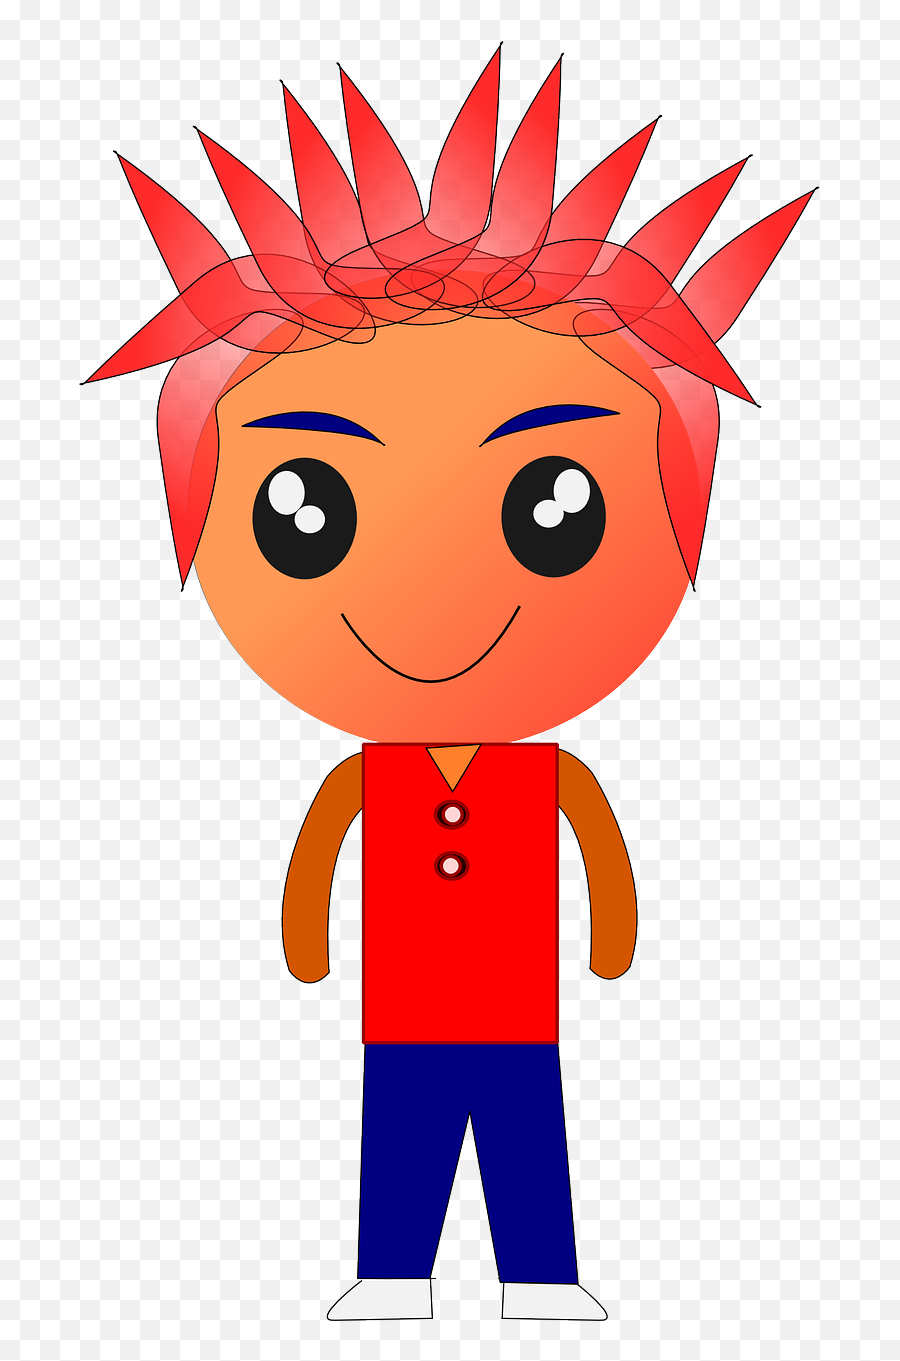 Spiky Hair Cartoon Kids Emoji,Chicken And Hatchet Animated Emoticon